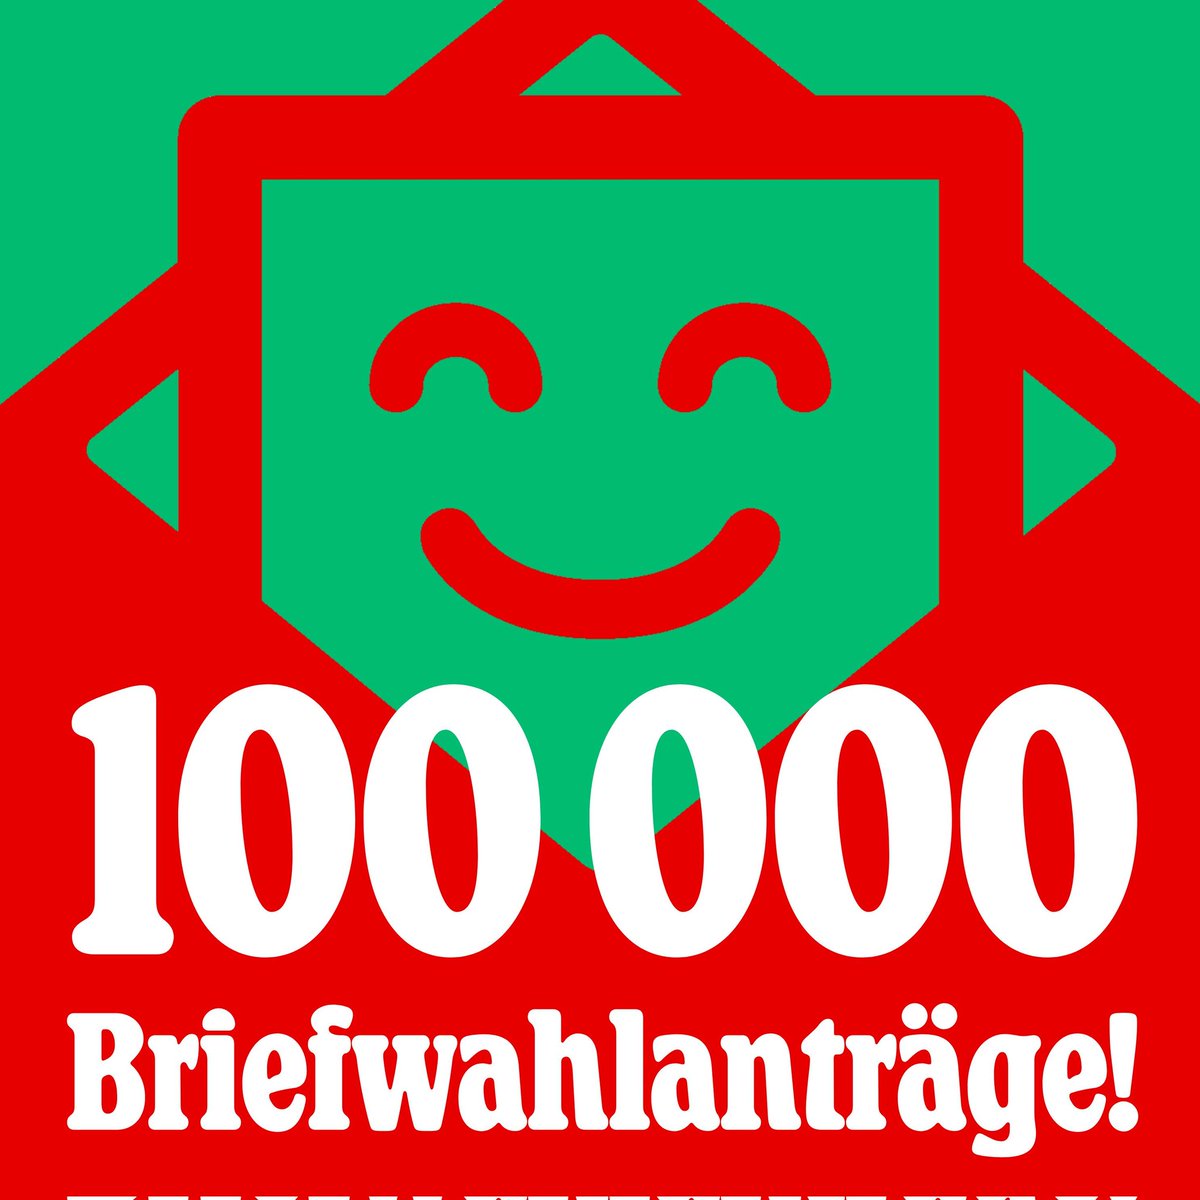 Könnt ihr es glauben? Schon 100.000 Menschen haben Briefwahl beantragt! 🔥 Wir brauchen mind. 613.000 JA-Stimmen, um das Zustimmungsquorum zu erreichen - unterstützt uns dabei, gemeinsam machen wir es möglich! ✊ #Berlin2030 #Volksentscheid #BriefwahlJetzt